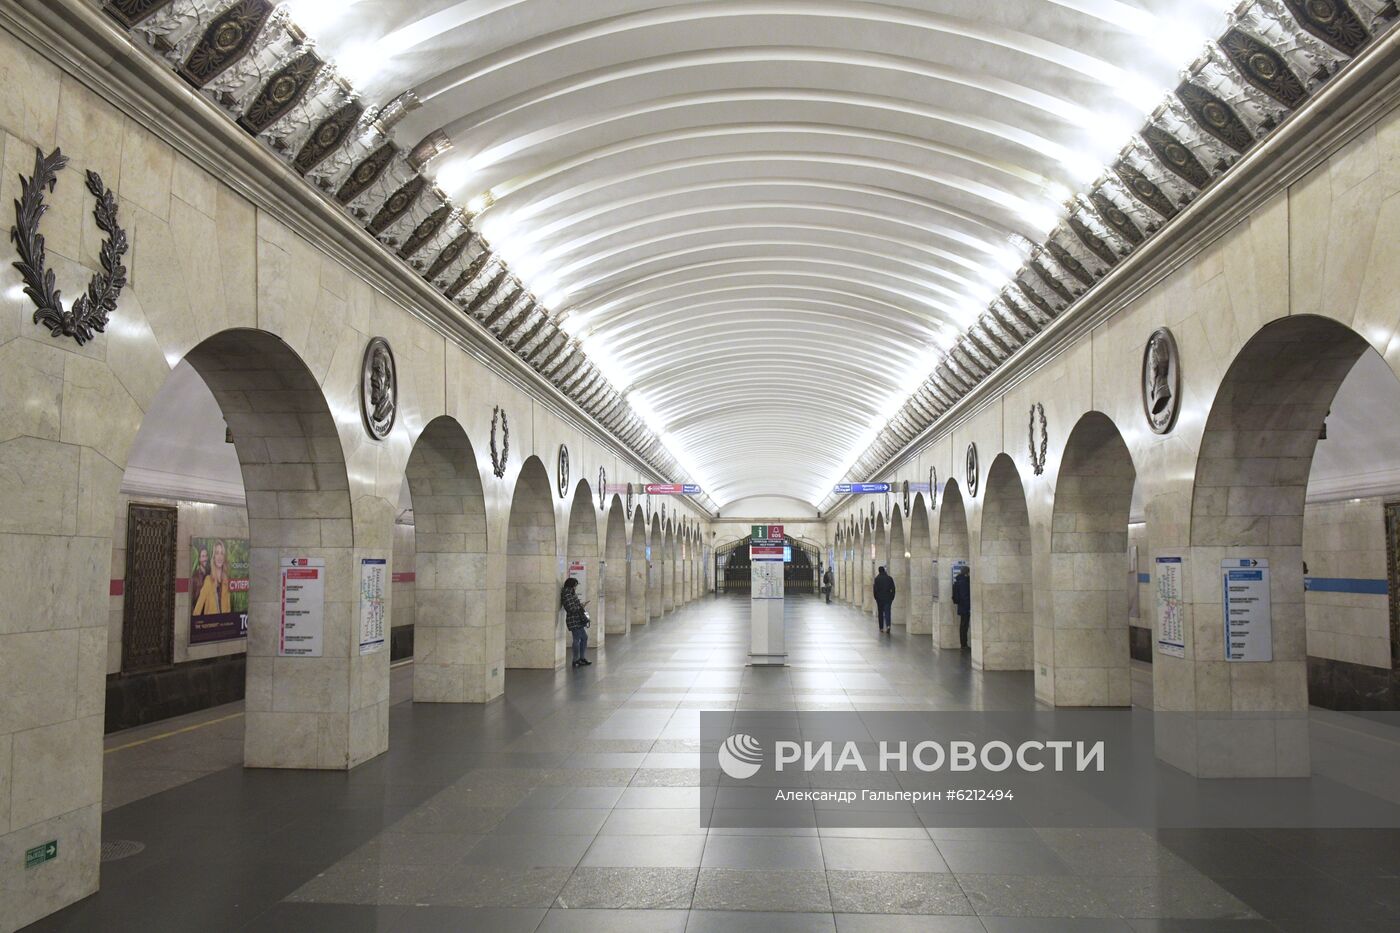 Открытие мемориальной доски в память о погибших при взрыве в метро Санкт-Петербурга